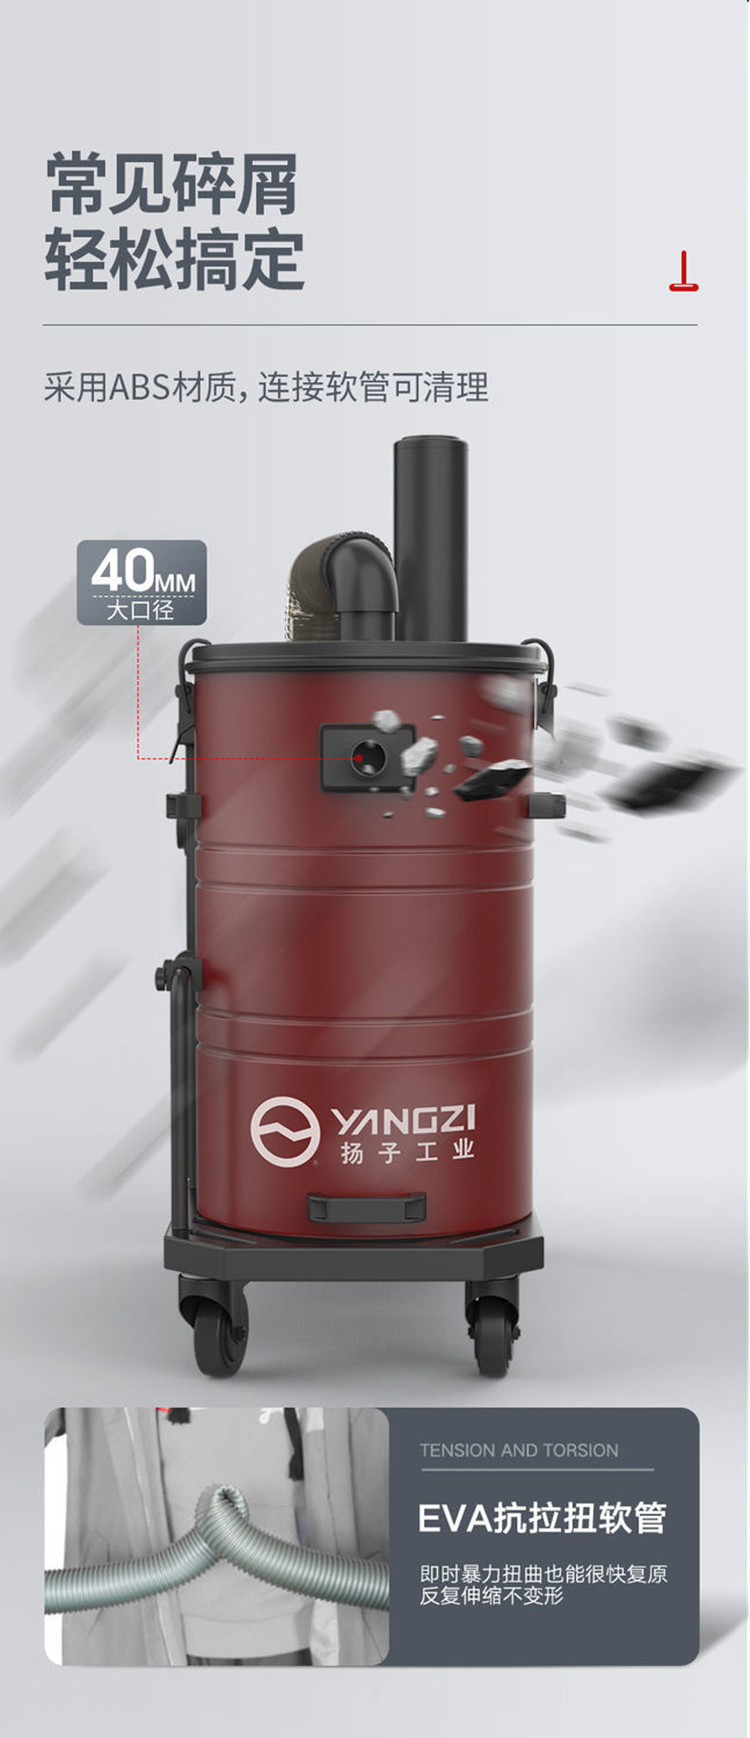 扬子C6 工业吸尘器(图7)